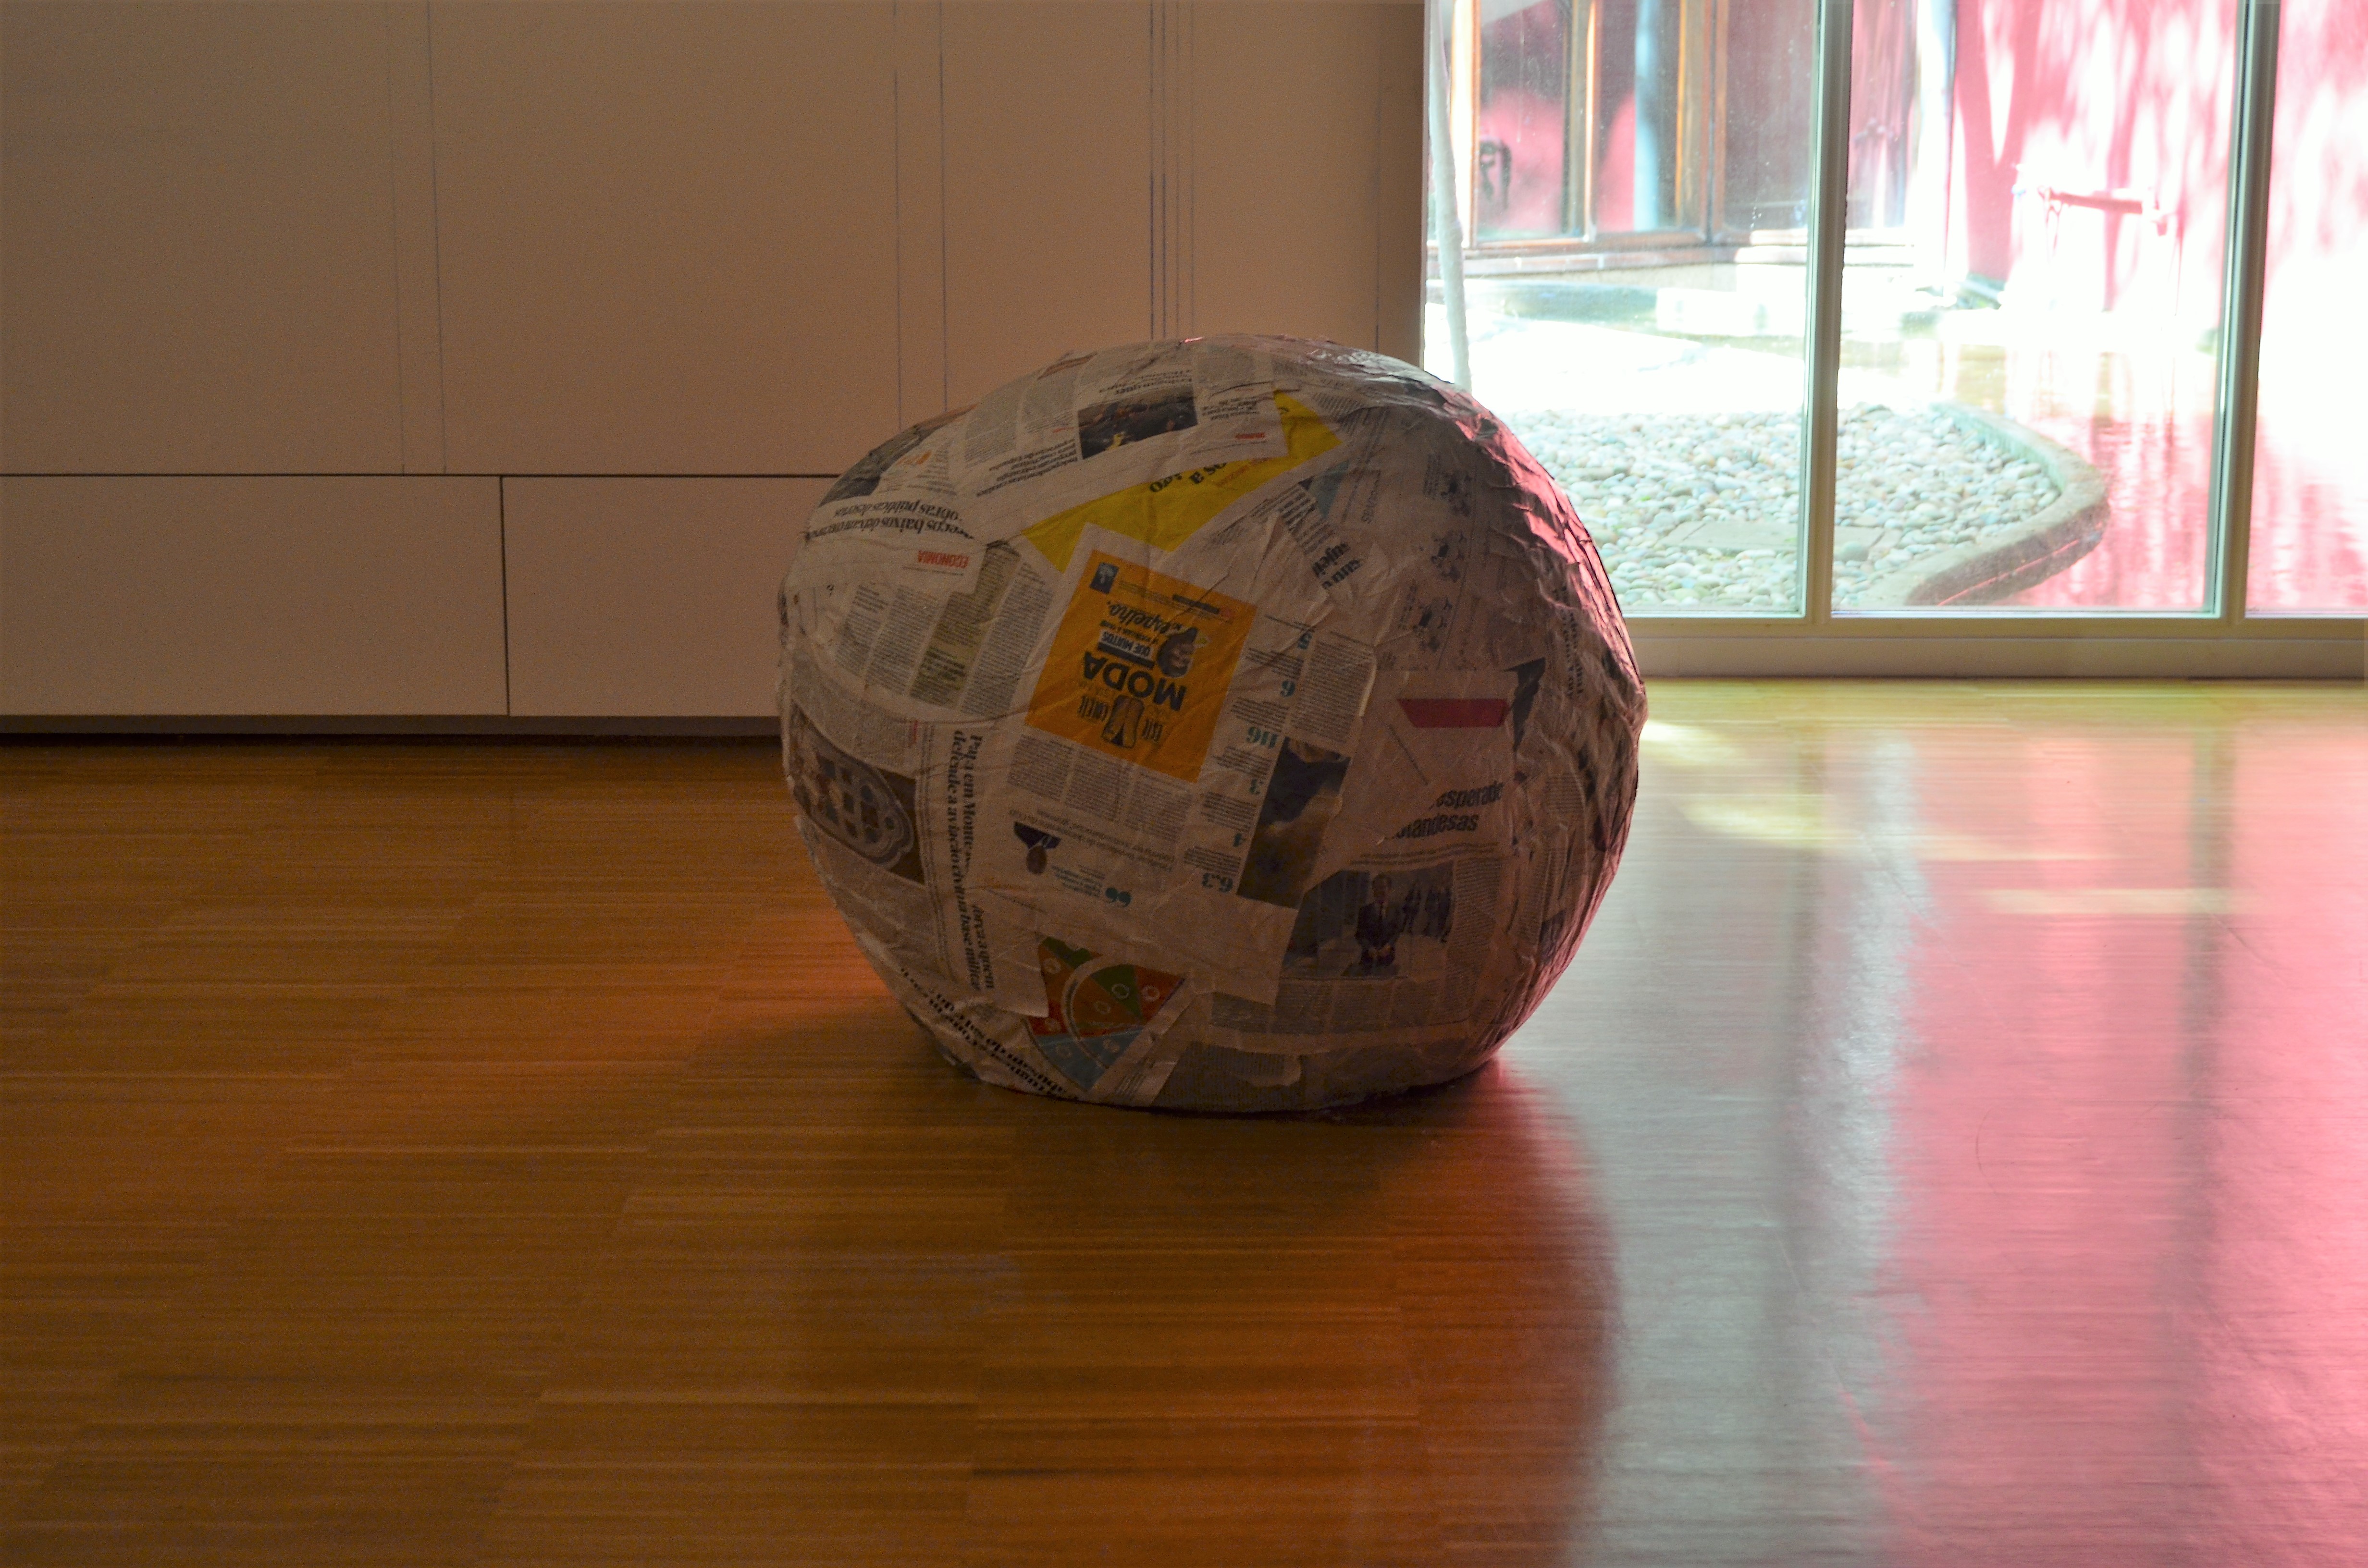 Michelangelo Pistoletto idealizou uma "escultura para passear", onde uma grande bola feita de jornal pode ser passeada pelas ruas. 